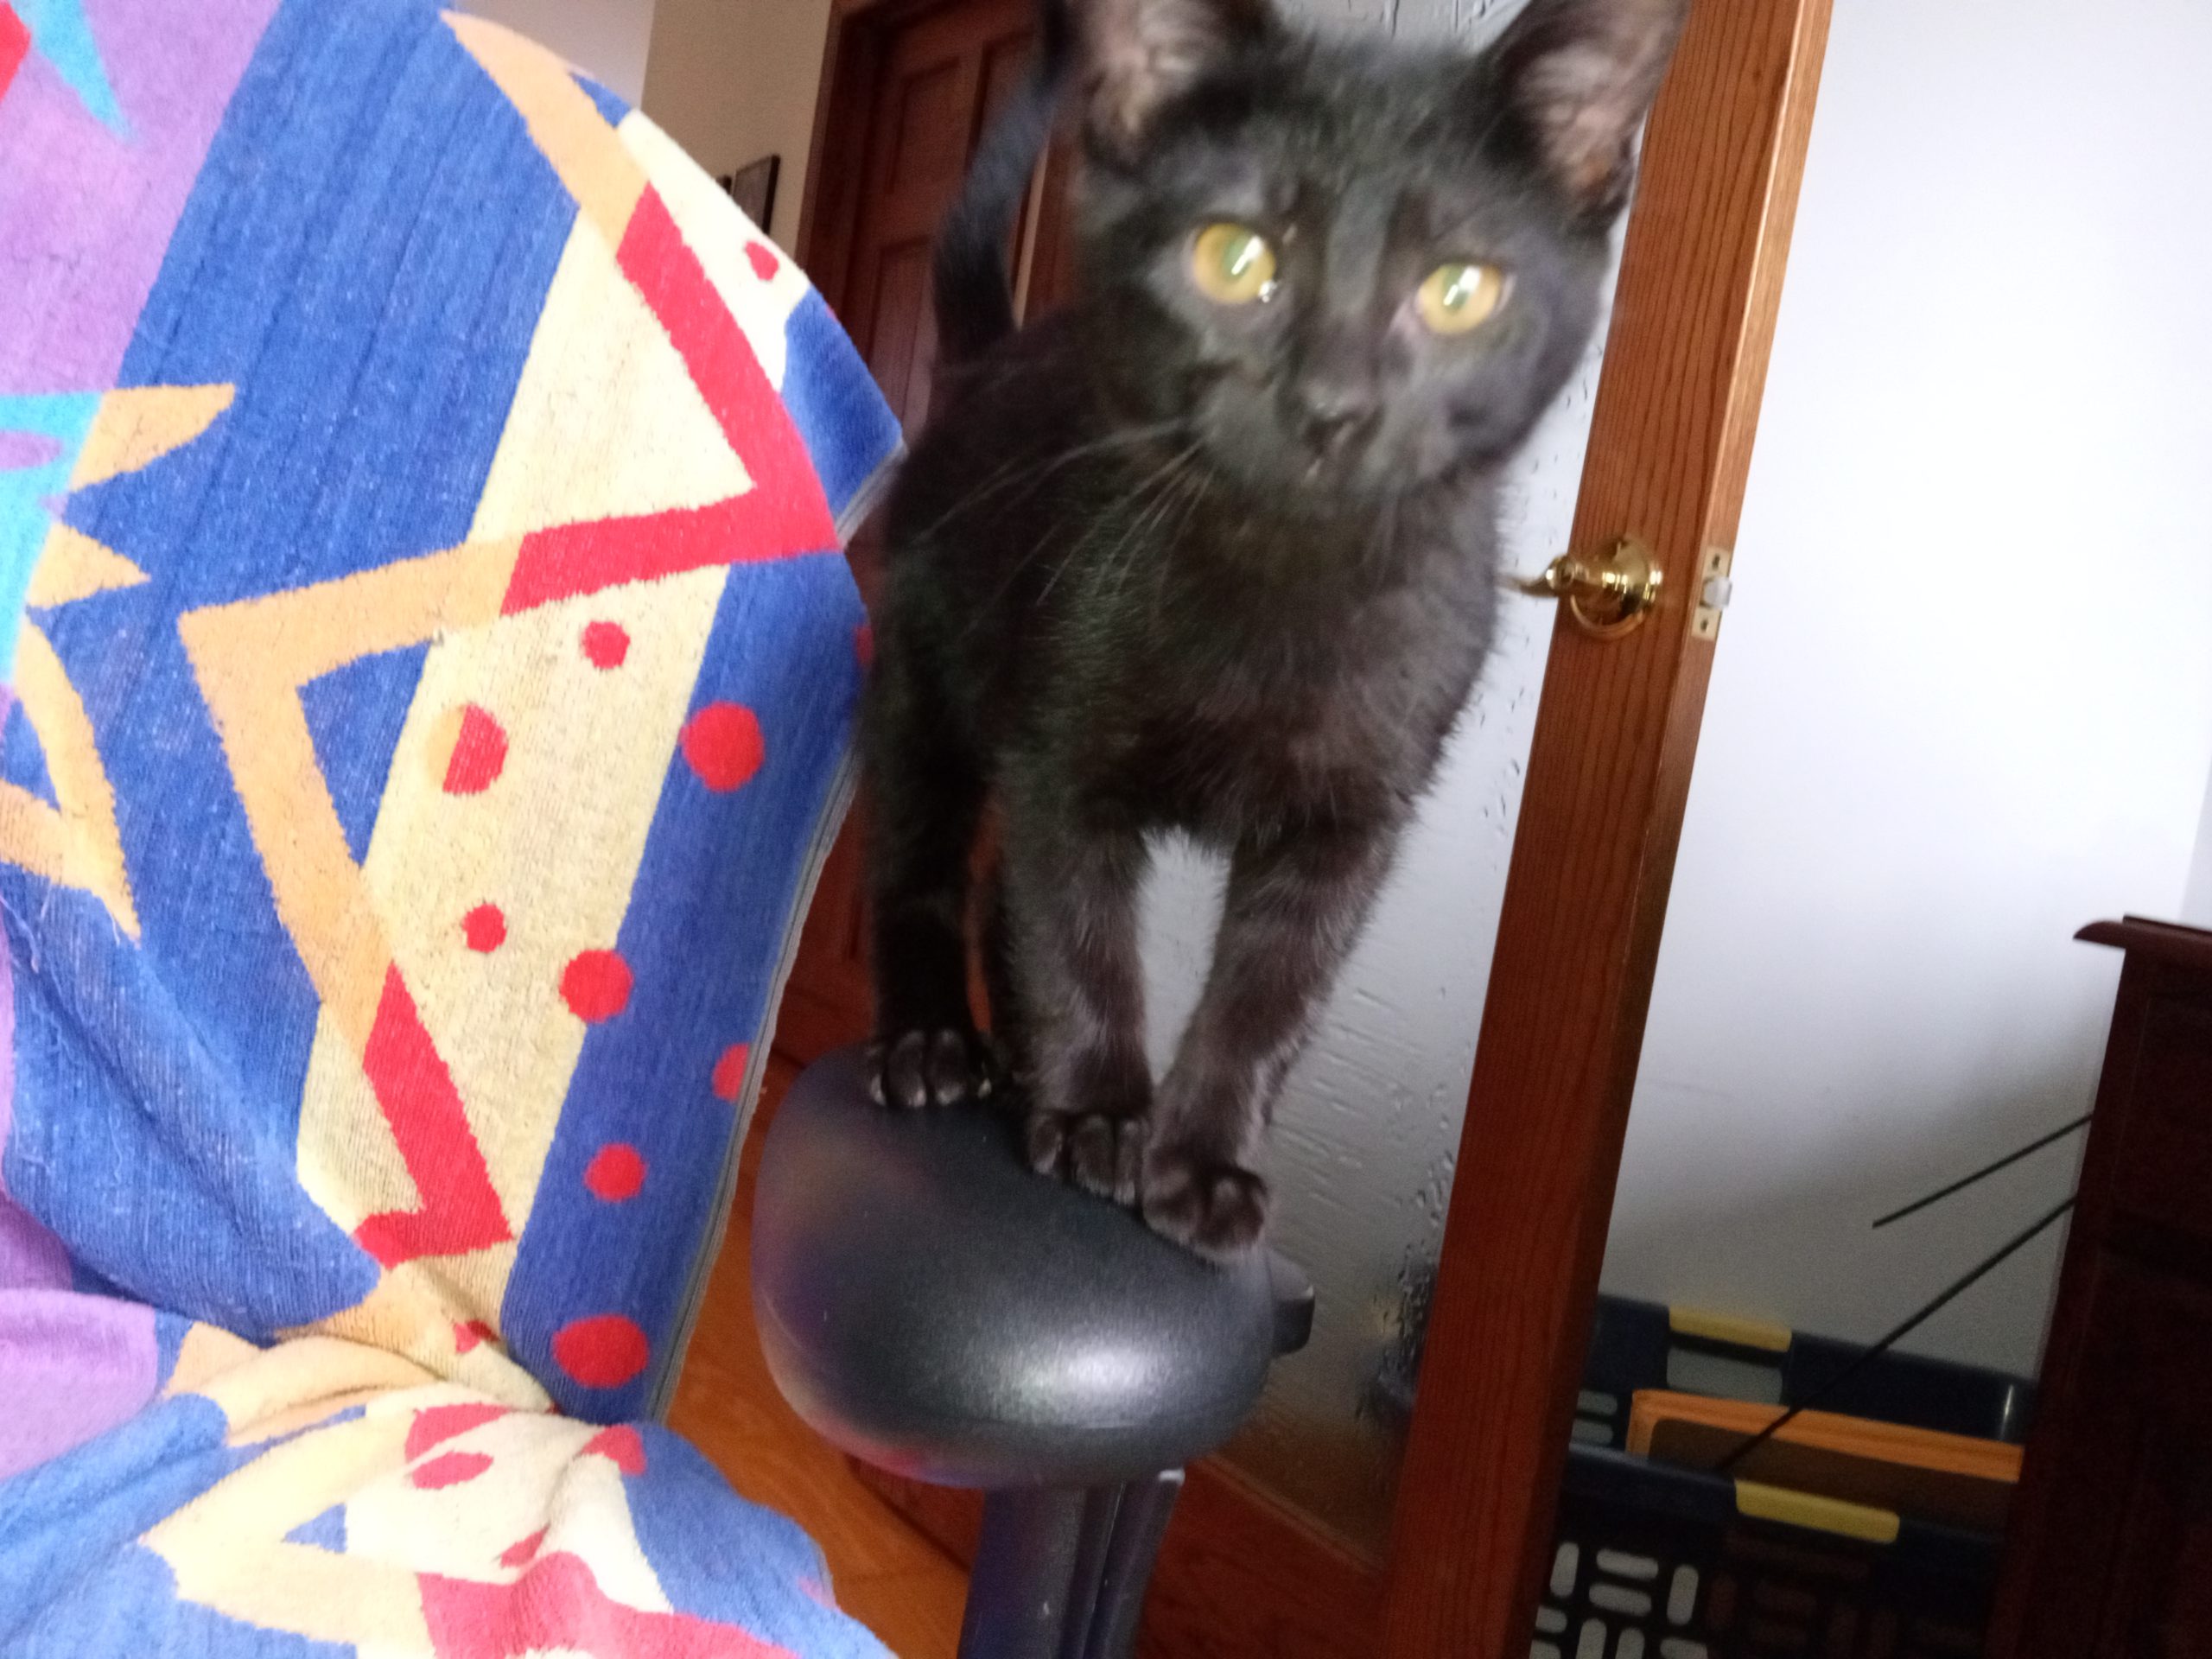 Kitten Yoda standing on a chair arm rest